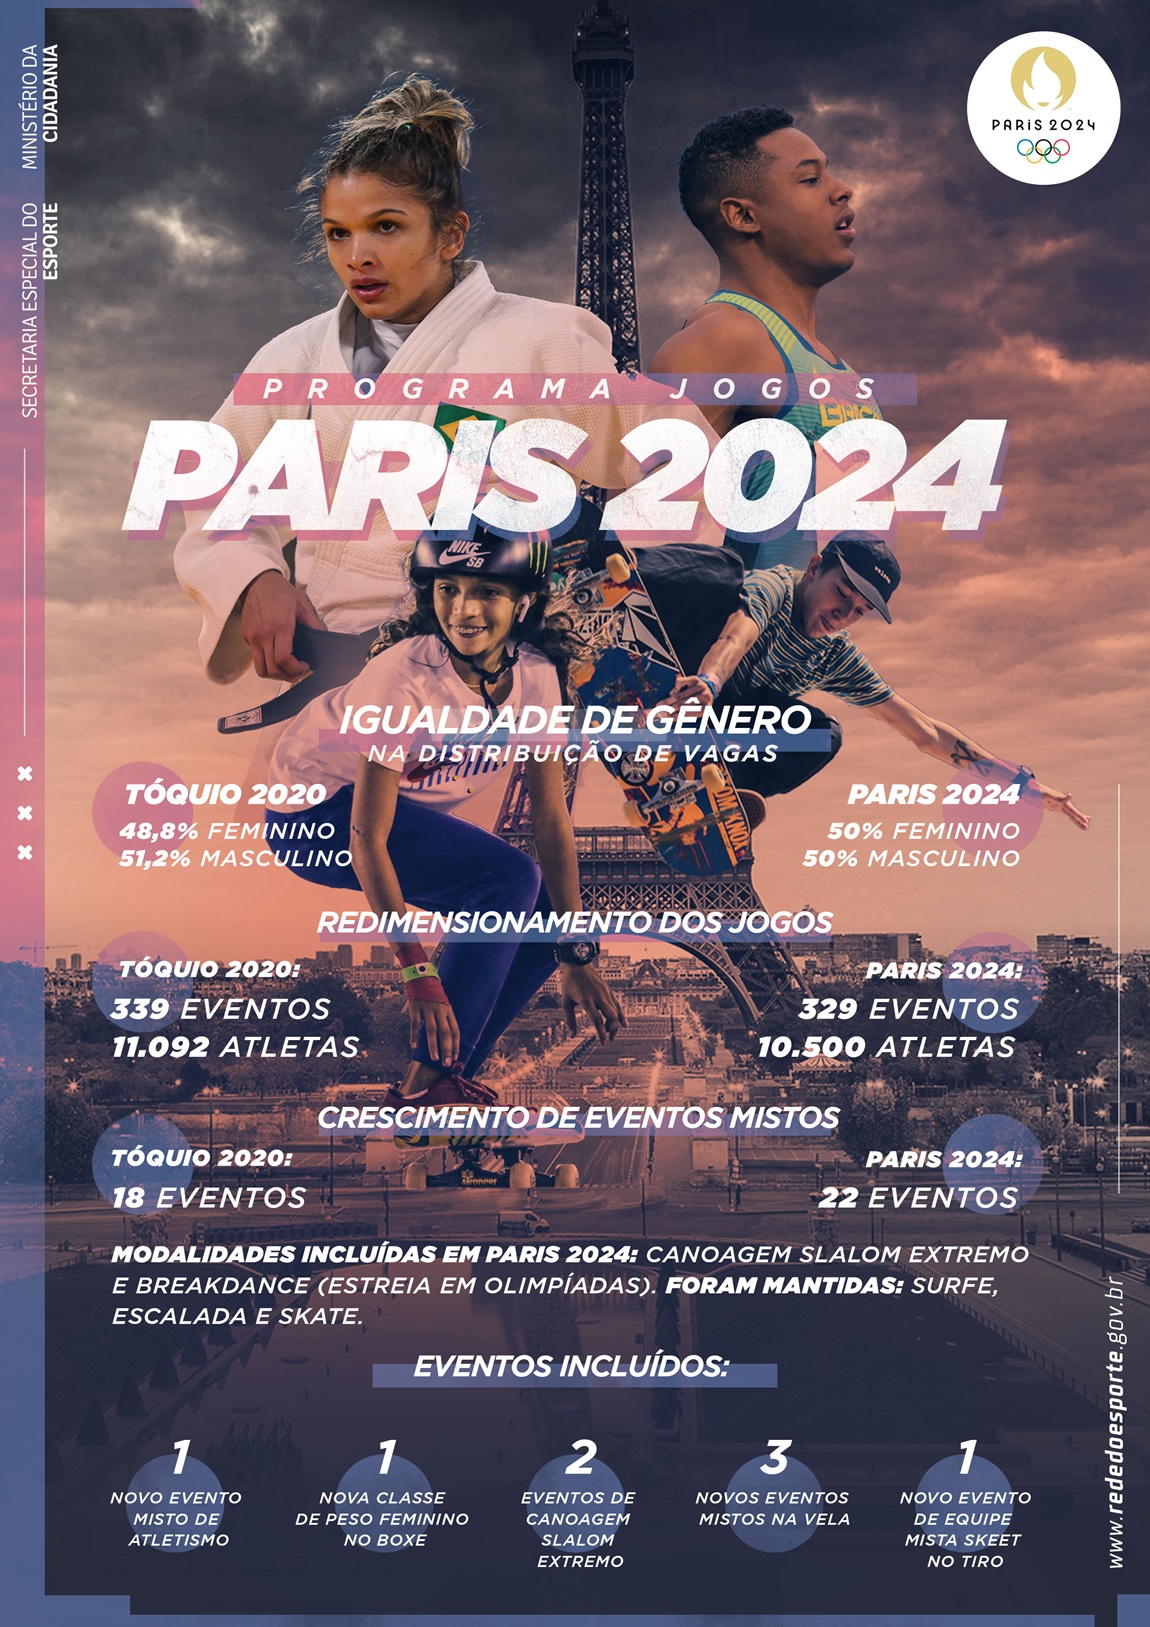 Paris 2024: Modo de usar - Máquina do Esporte